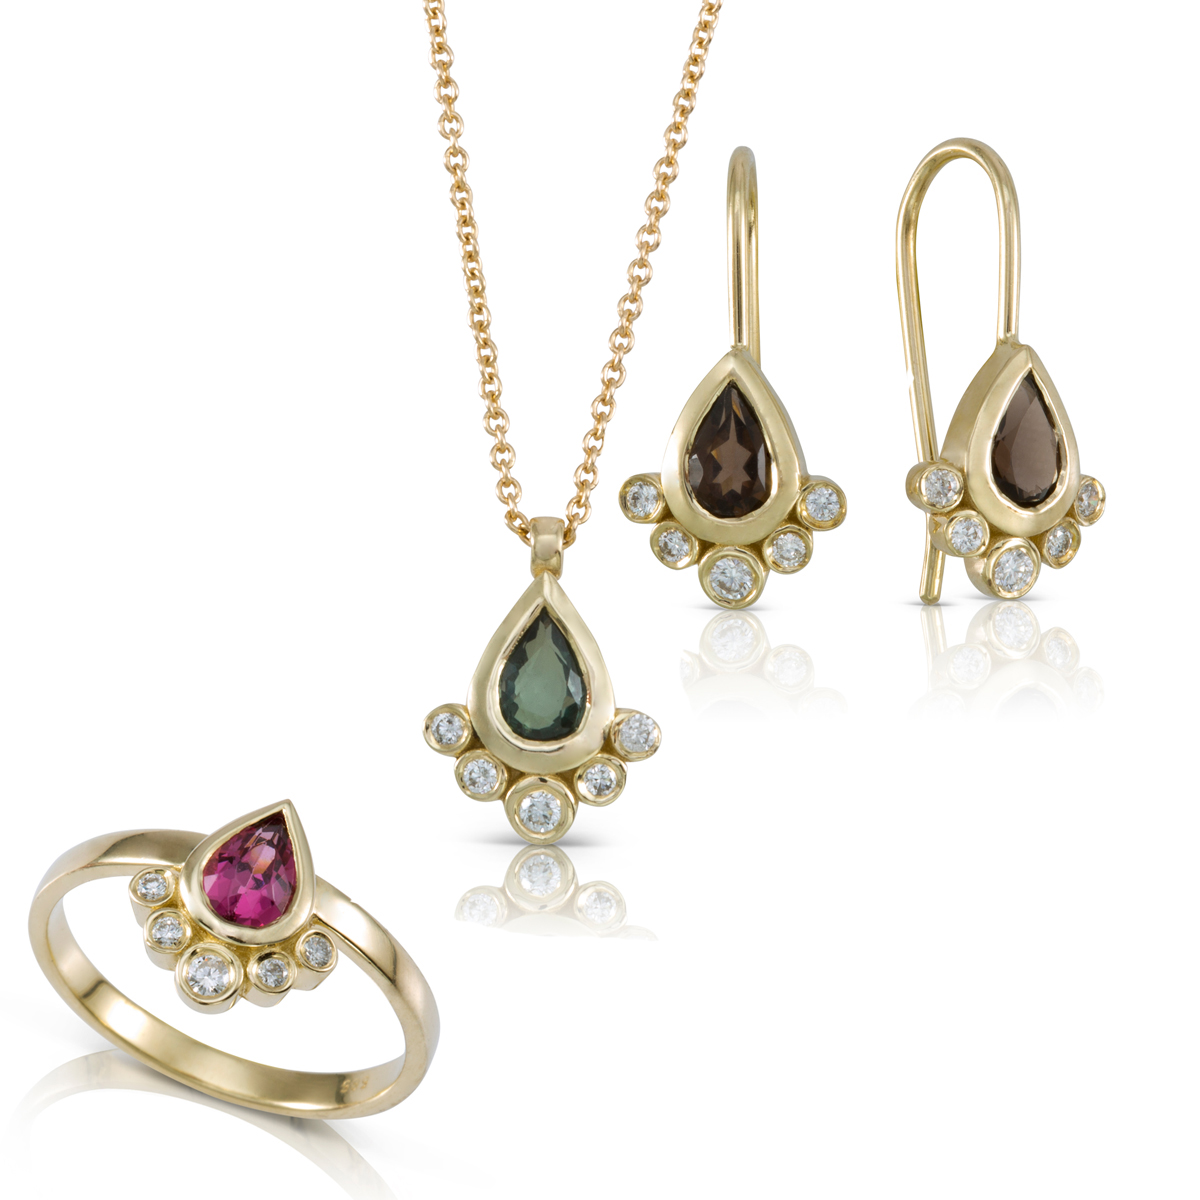 A gemstone jewelry set